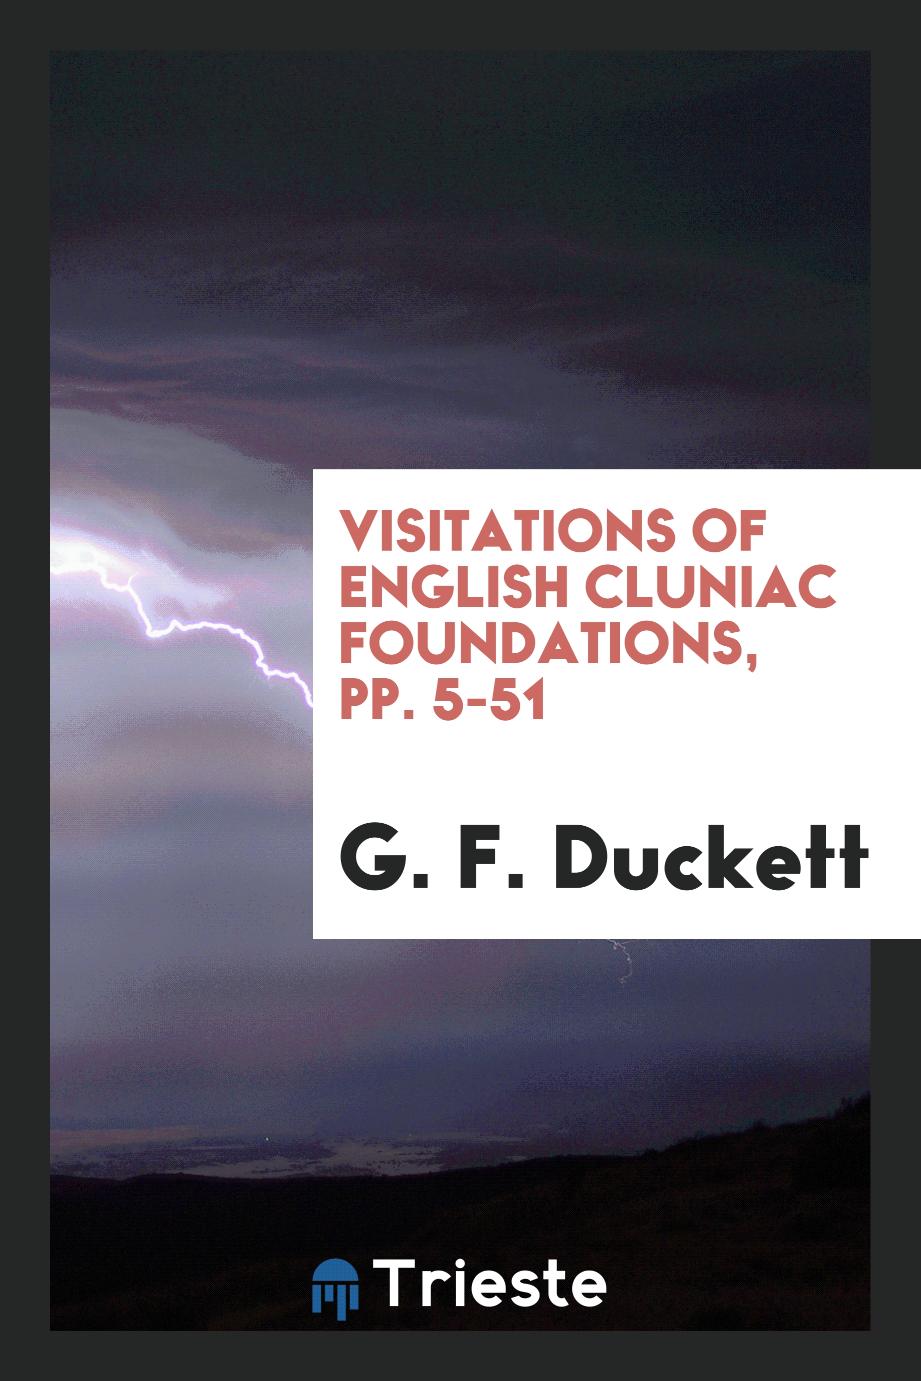 G. F. Duckett - Visitations of English Cluniac Foundations, pp. 5-51